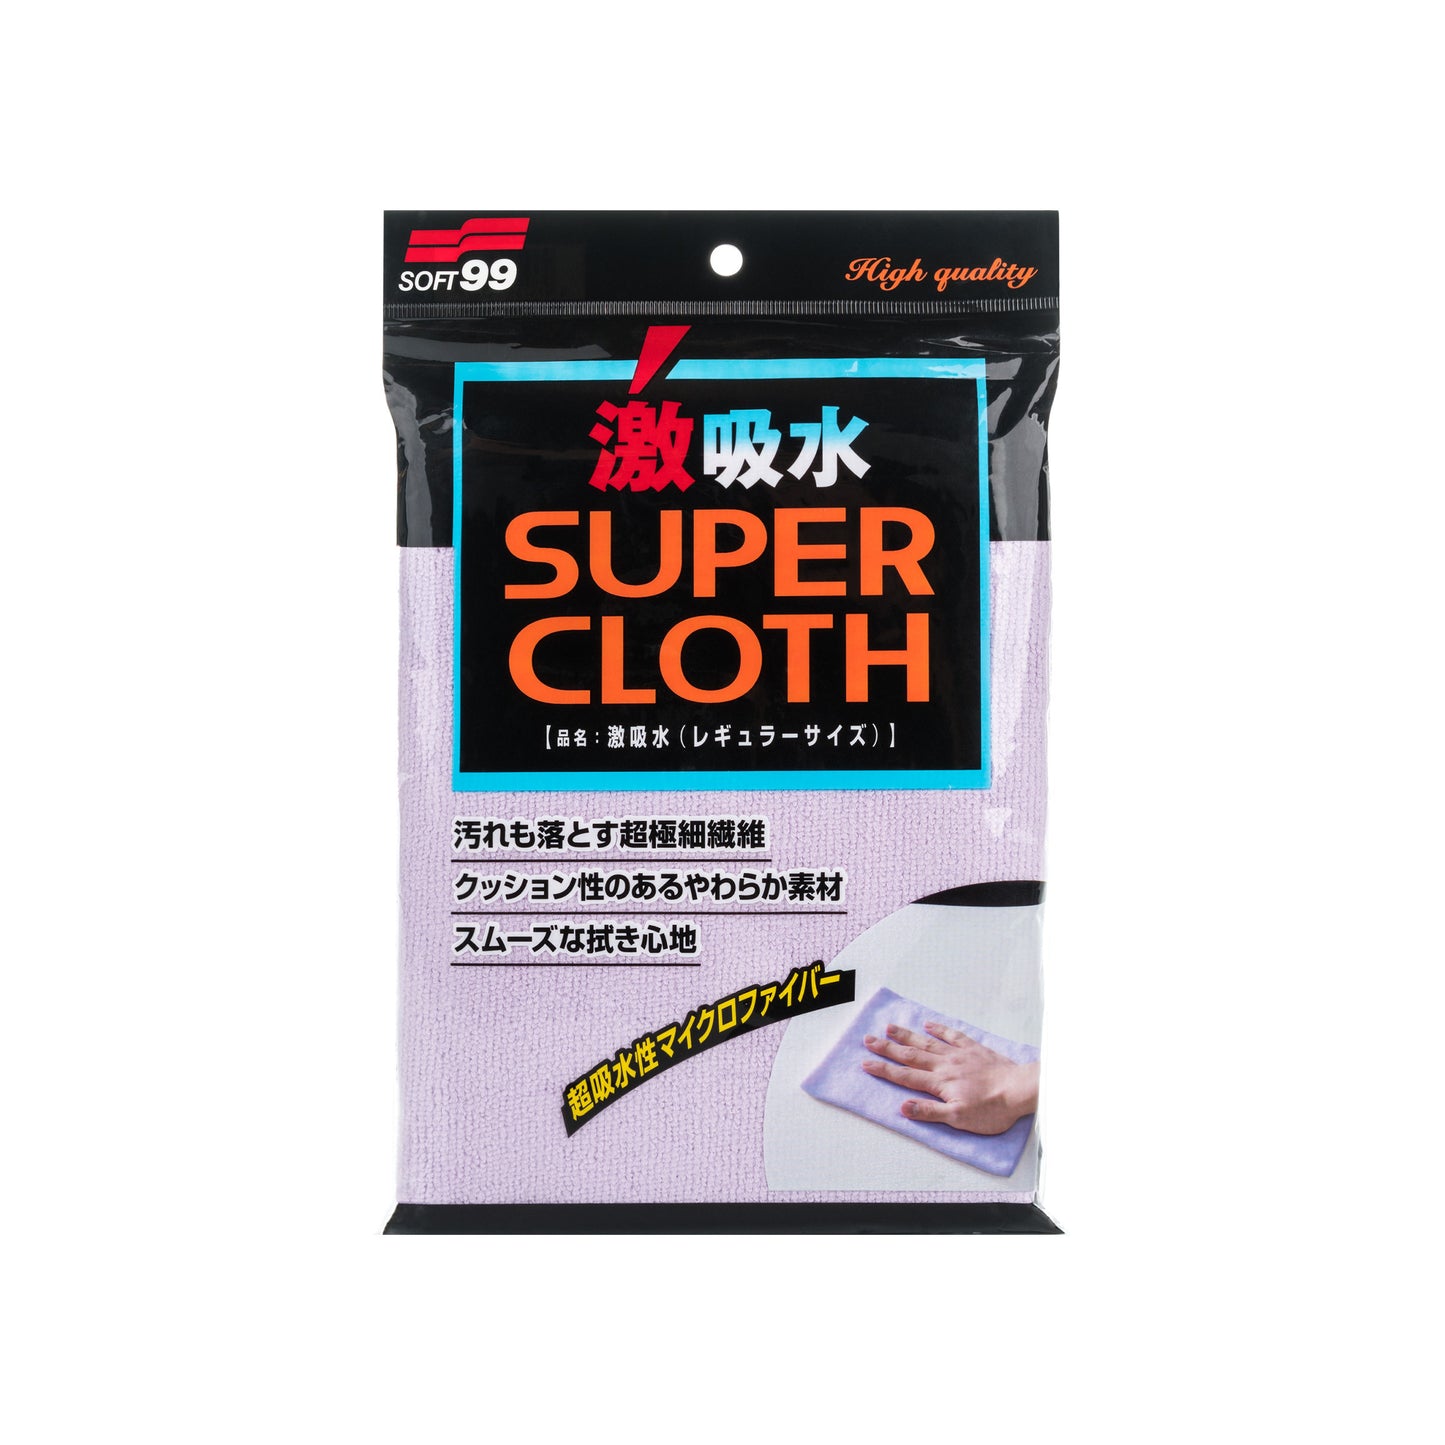 Super Cloth Microfiber (MEGA PACK 50Stk)